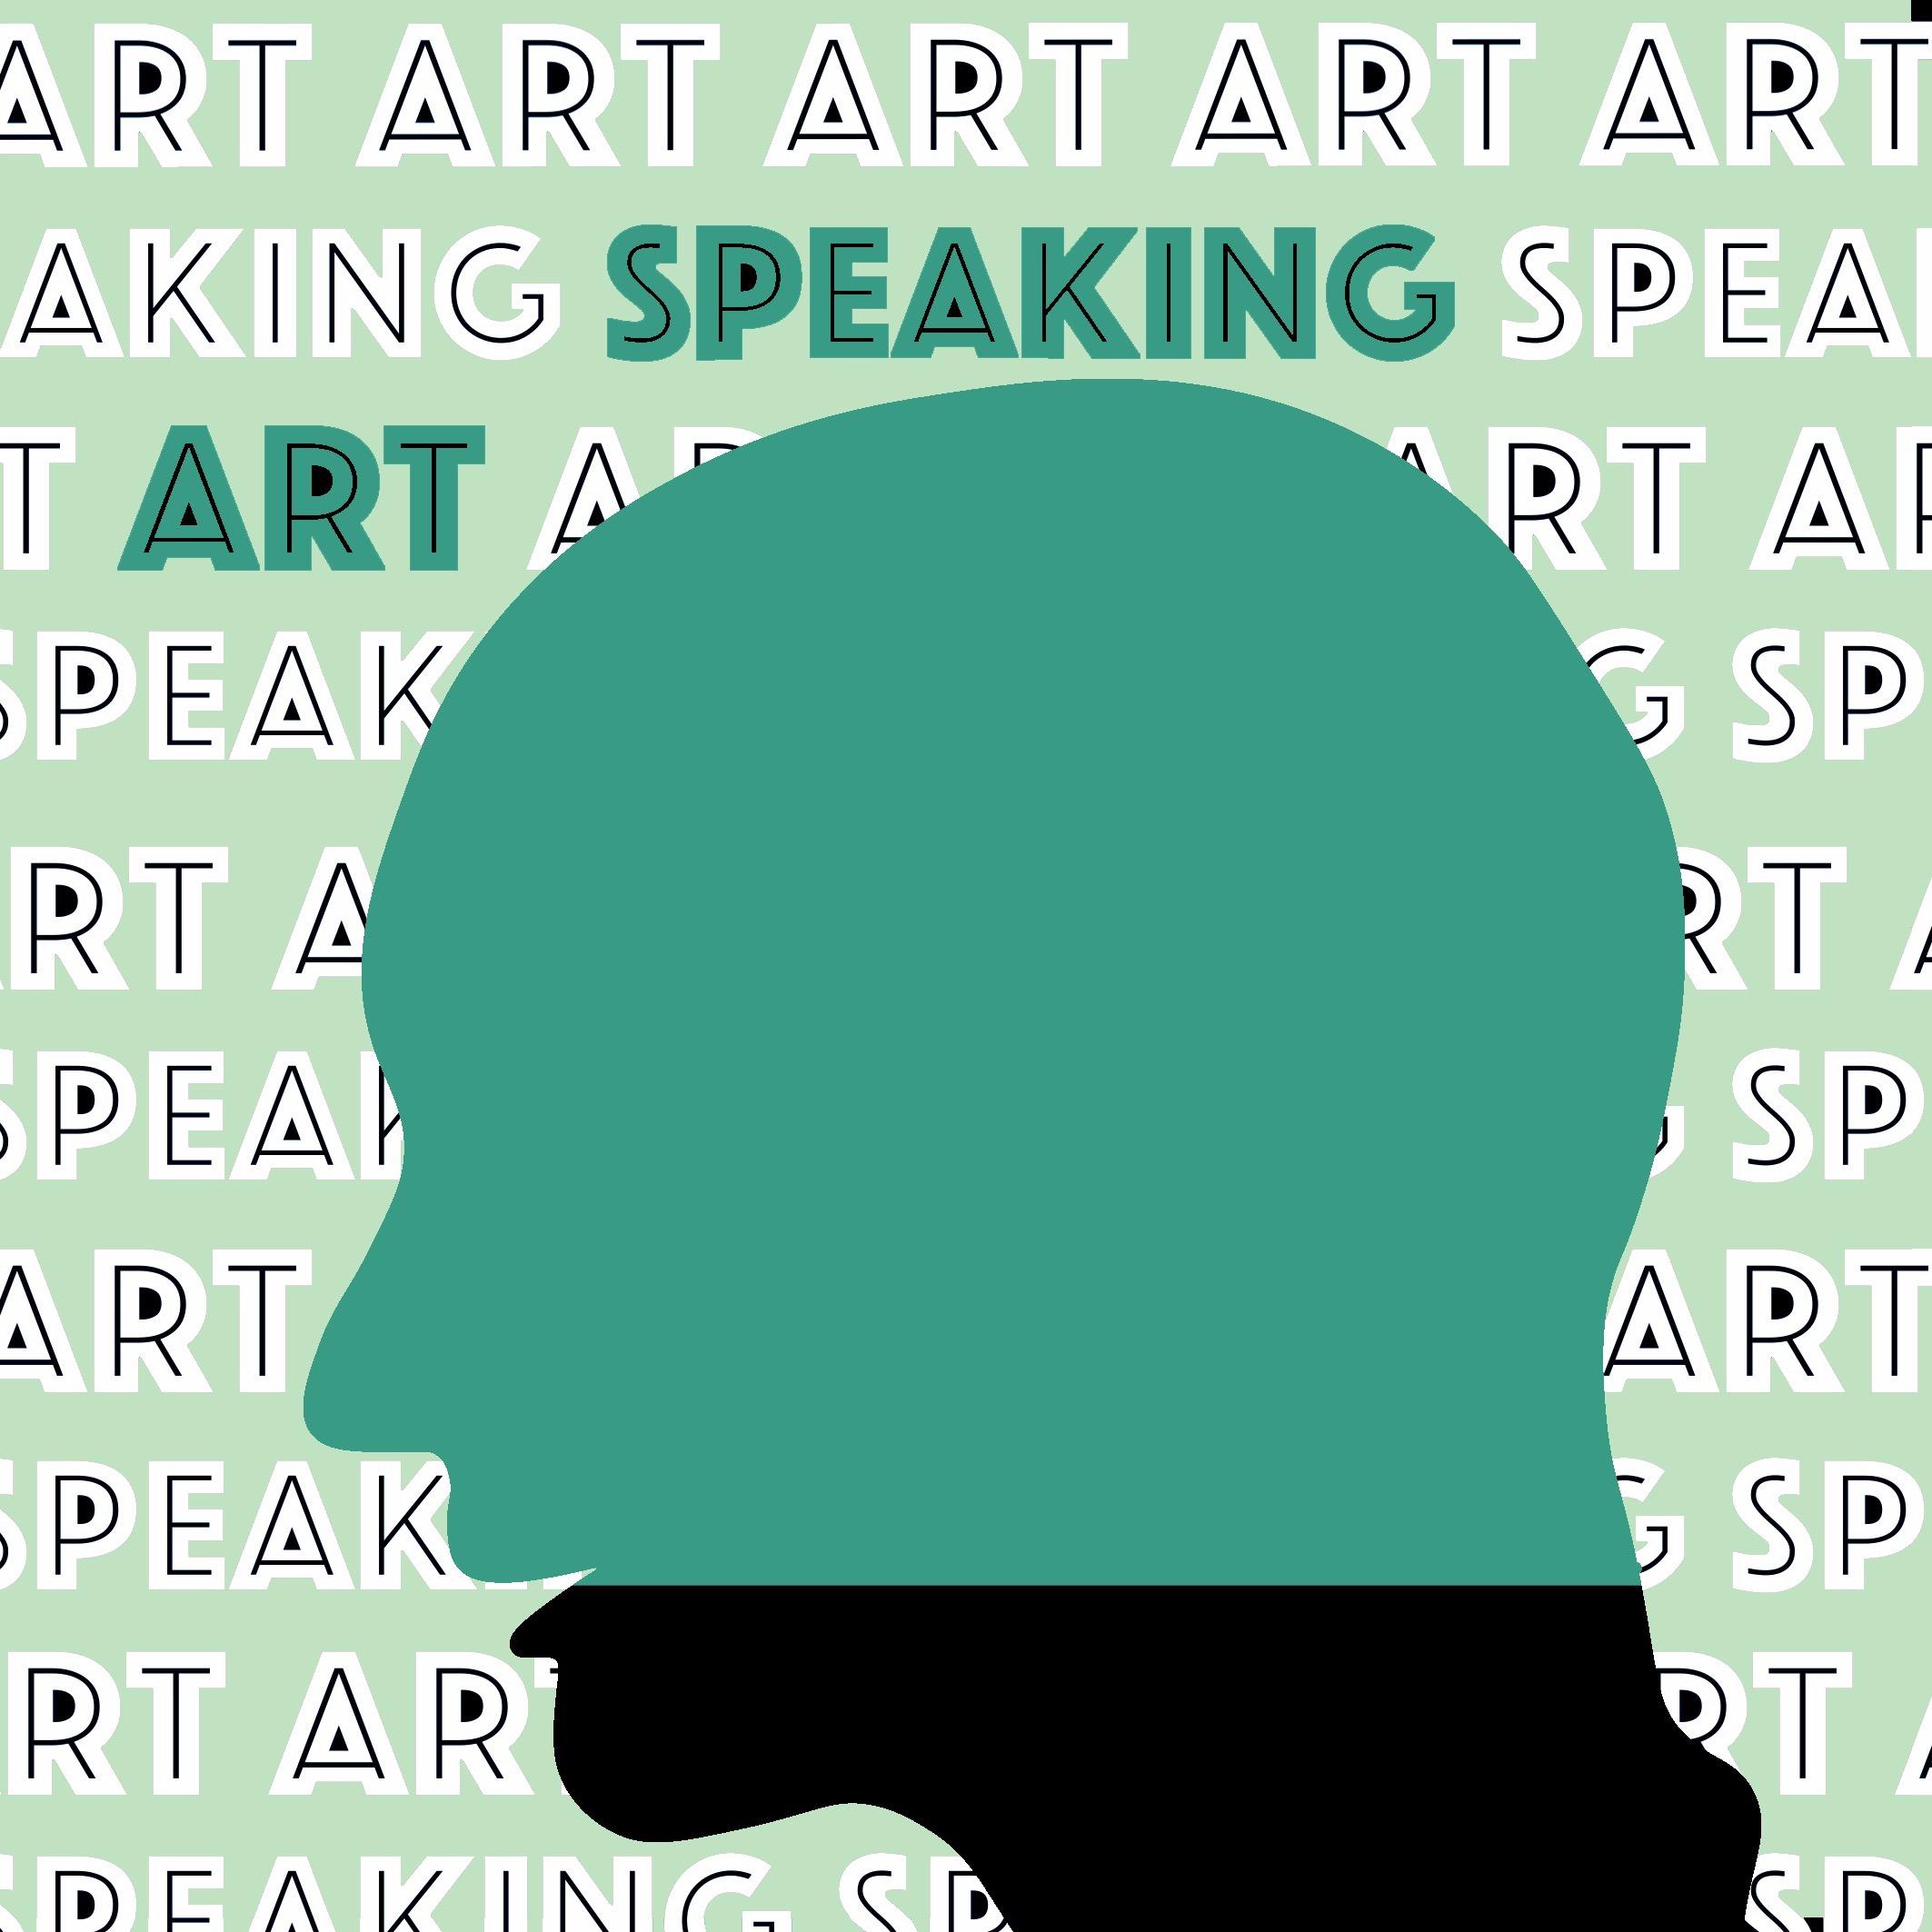 Speaking Art